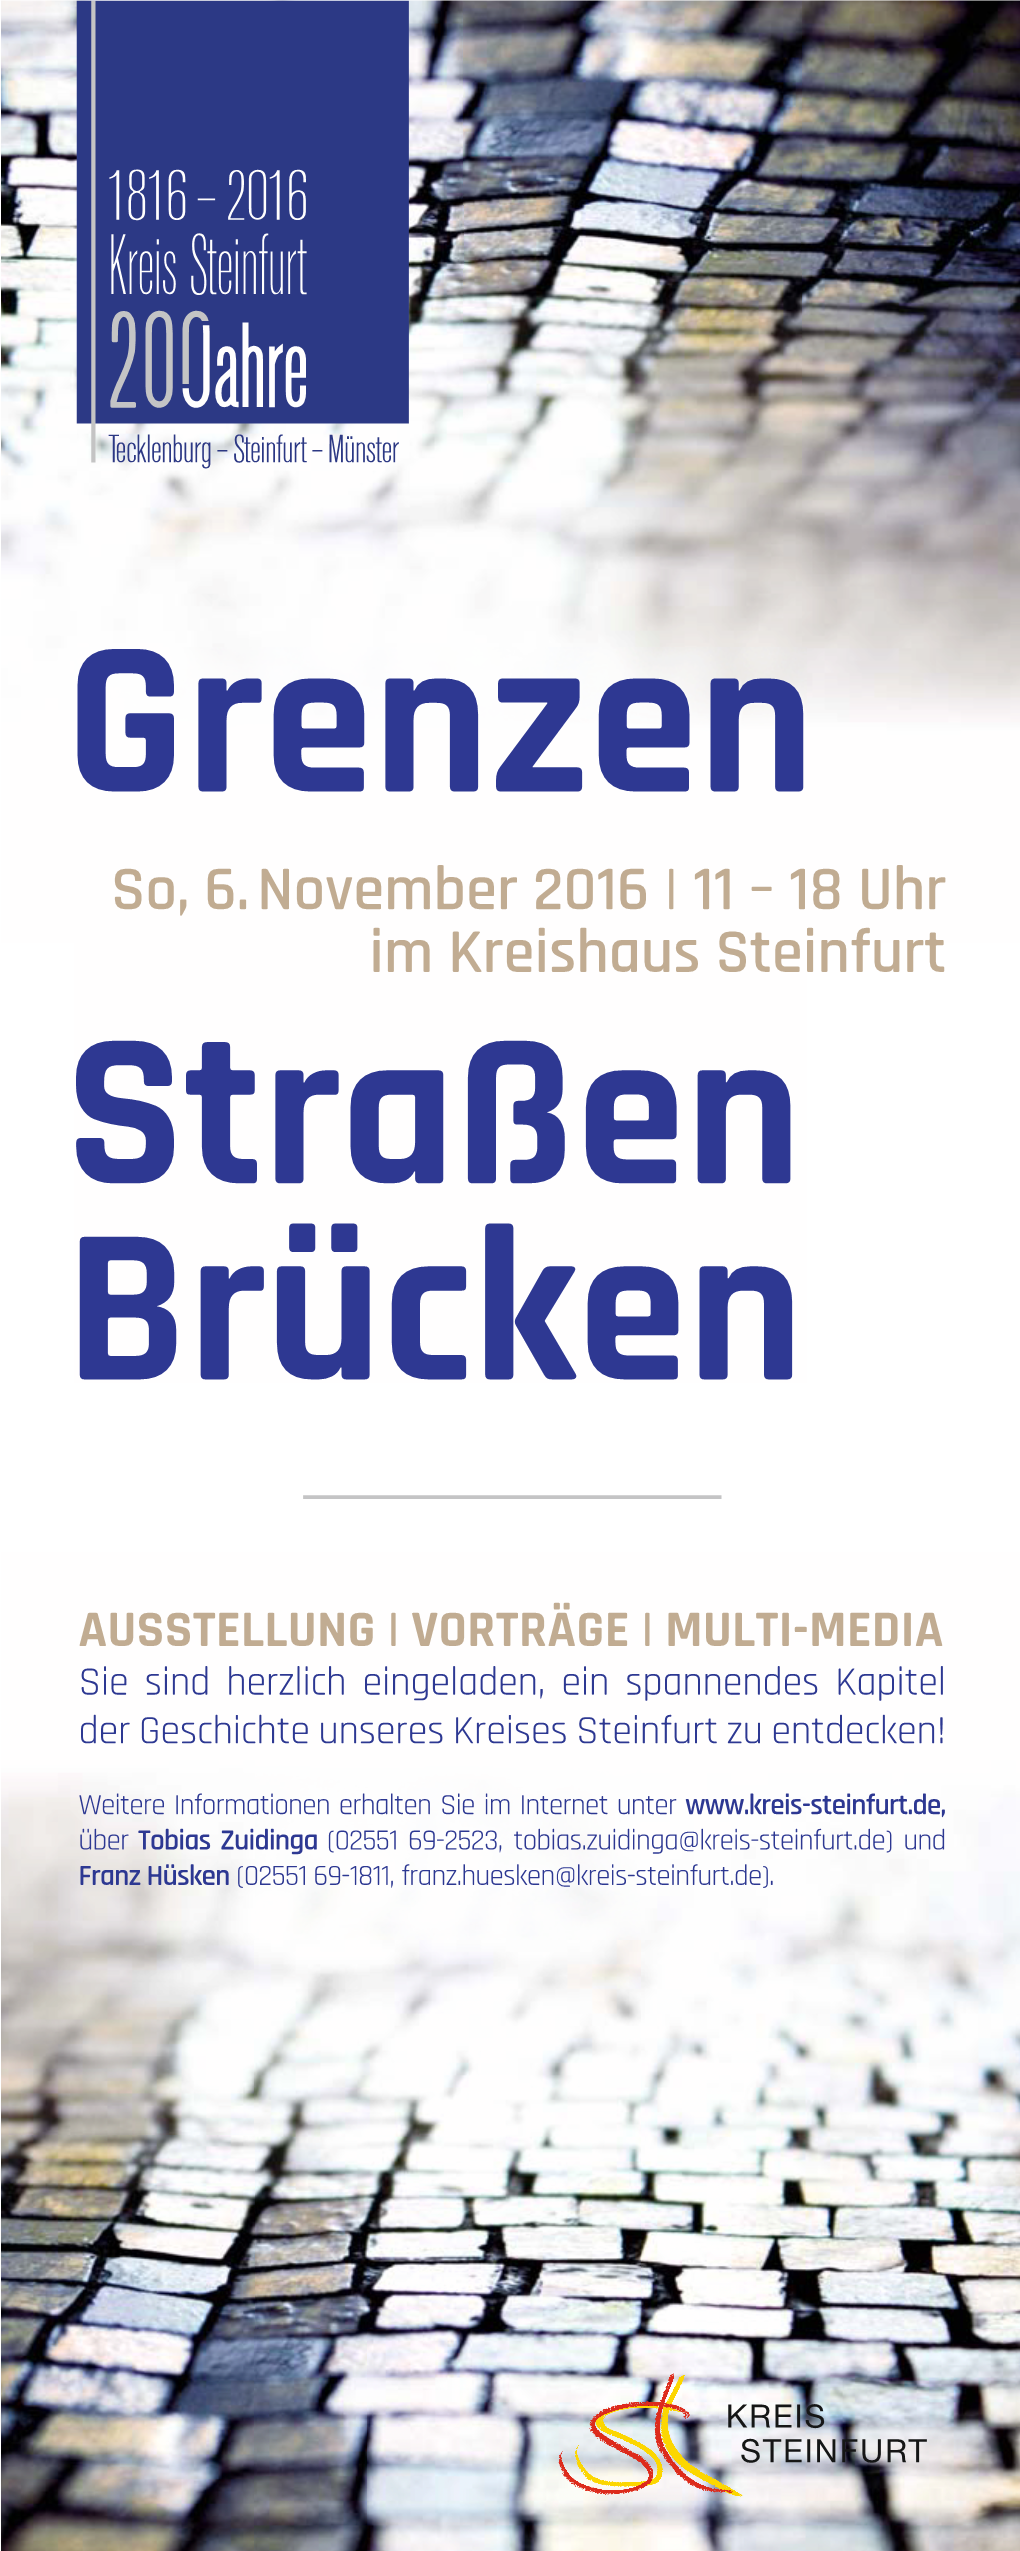 Ausstellung "Grenzen Straßen Brücken", Kreis Steinfurt